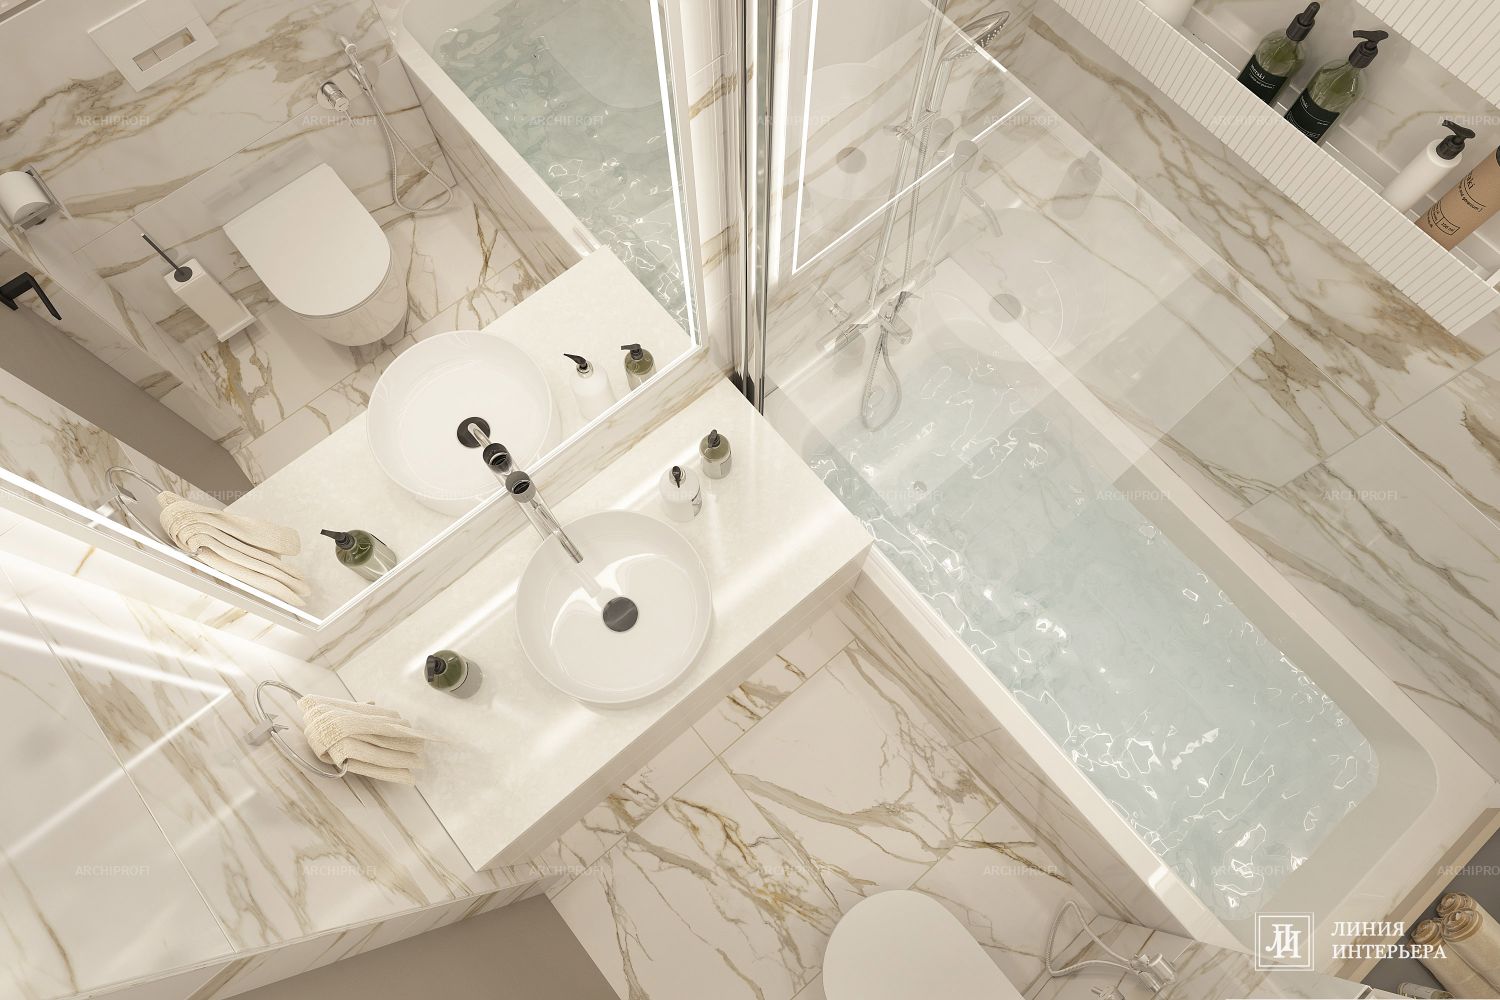 3D интерьера, Ванная комната площадью 3 кв.м. в стиле Современная. Проект Дизайн ванной в светлых тонах - ЖК Фили Сити (Filicity), Автор проекта: Дизайнеры Олеся Бирюкова